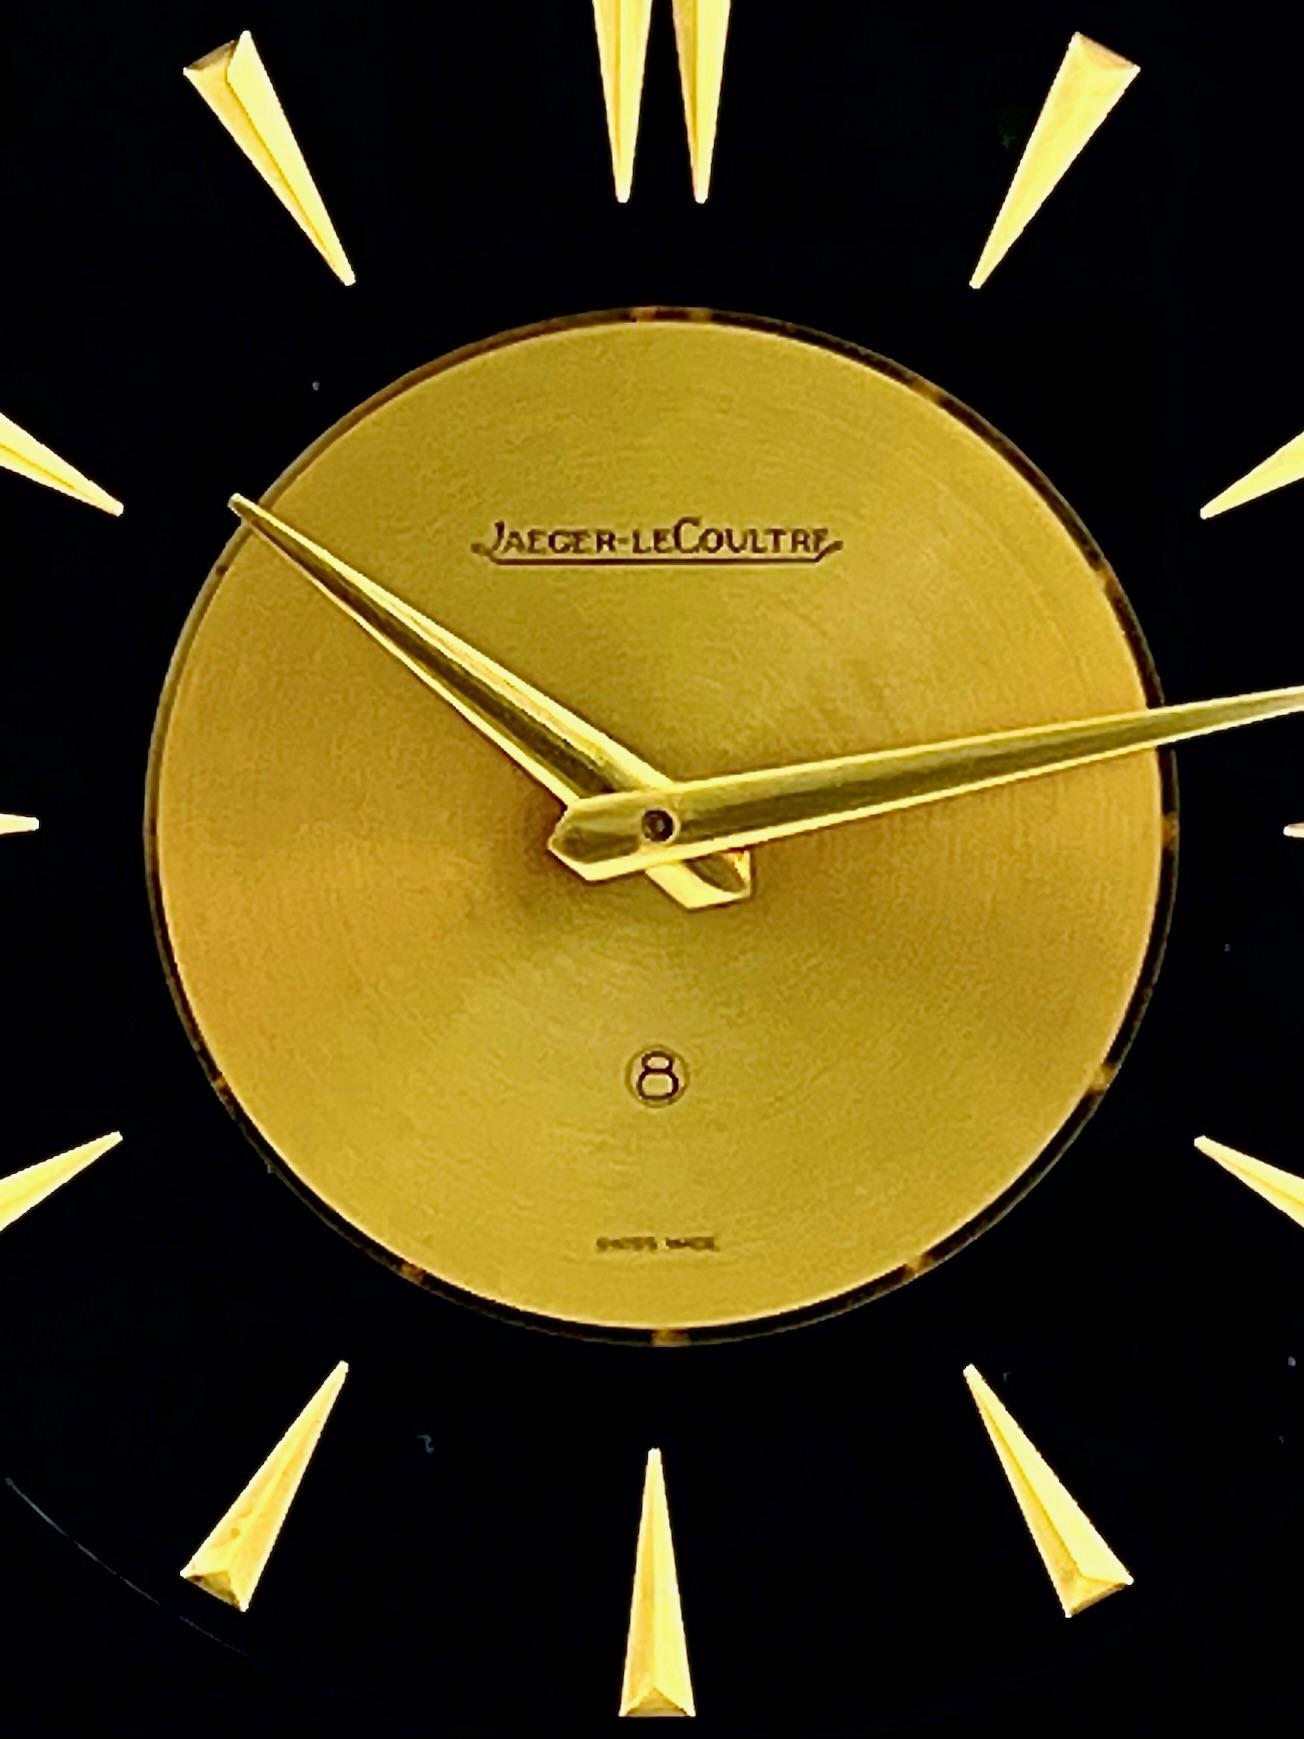 Schöne Jaeger LeCoultre Acht-Tage-Uhr Marina aus der Mitte des Jahrhunderts mit detailliertem naturalistischem Design.

Diese Uhr hat ein poliertes Gehäuse aus vergoldetem Messing und Lucite mit schwarzem Hintergrund und ist mit einer Szene aus der